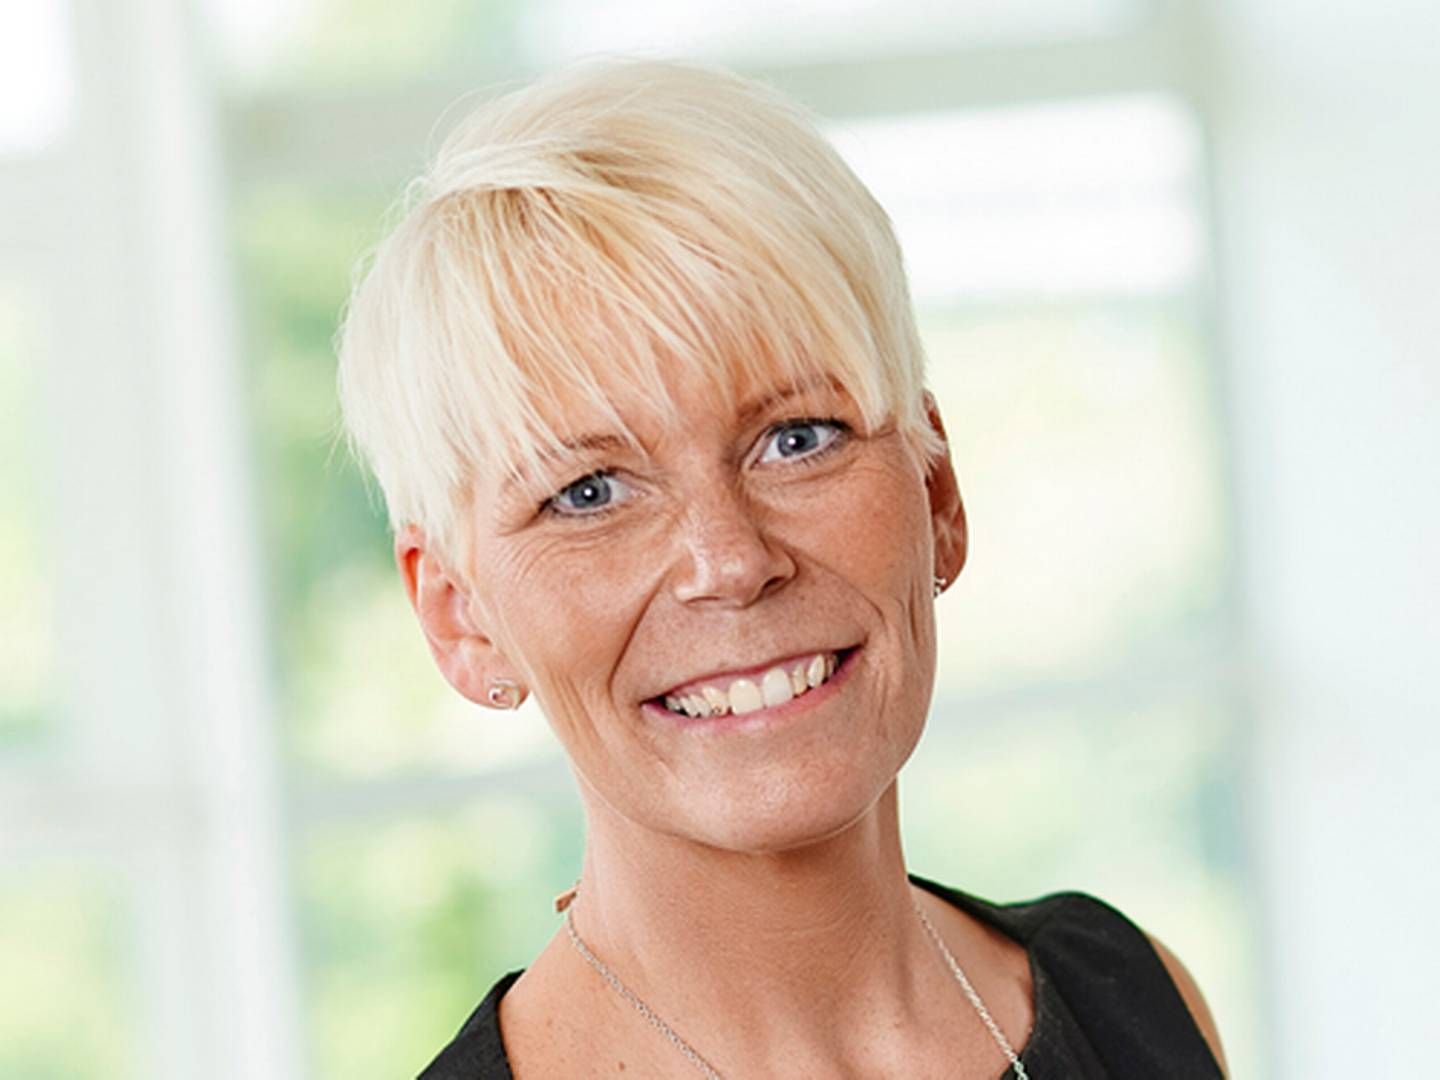 Adm. direktør i Ekspres Bank Annika Olsson. | Foto: Pressebillede